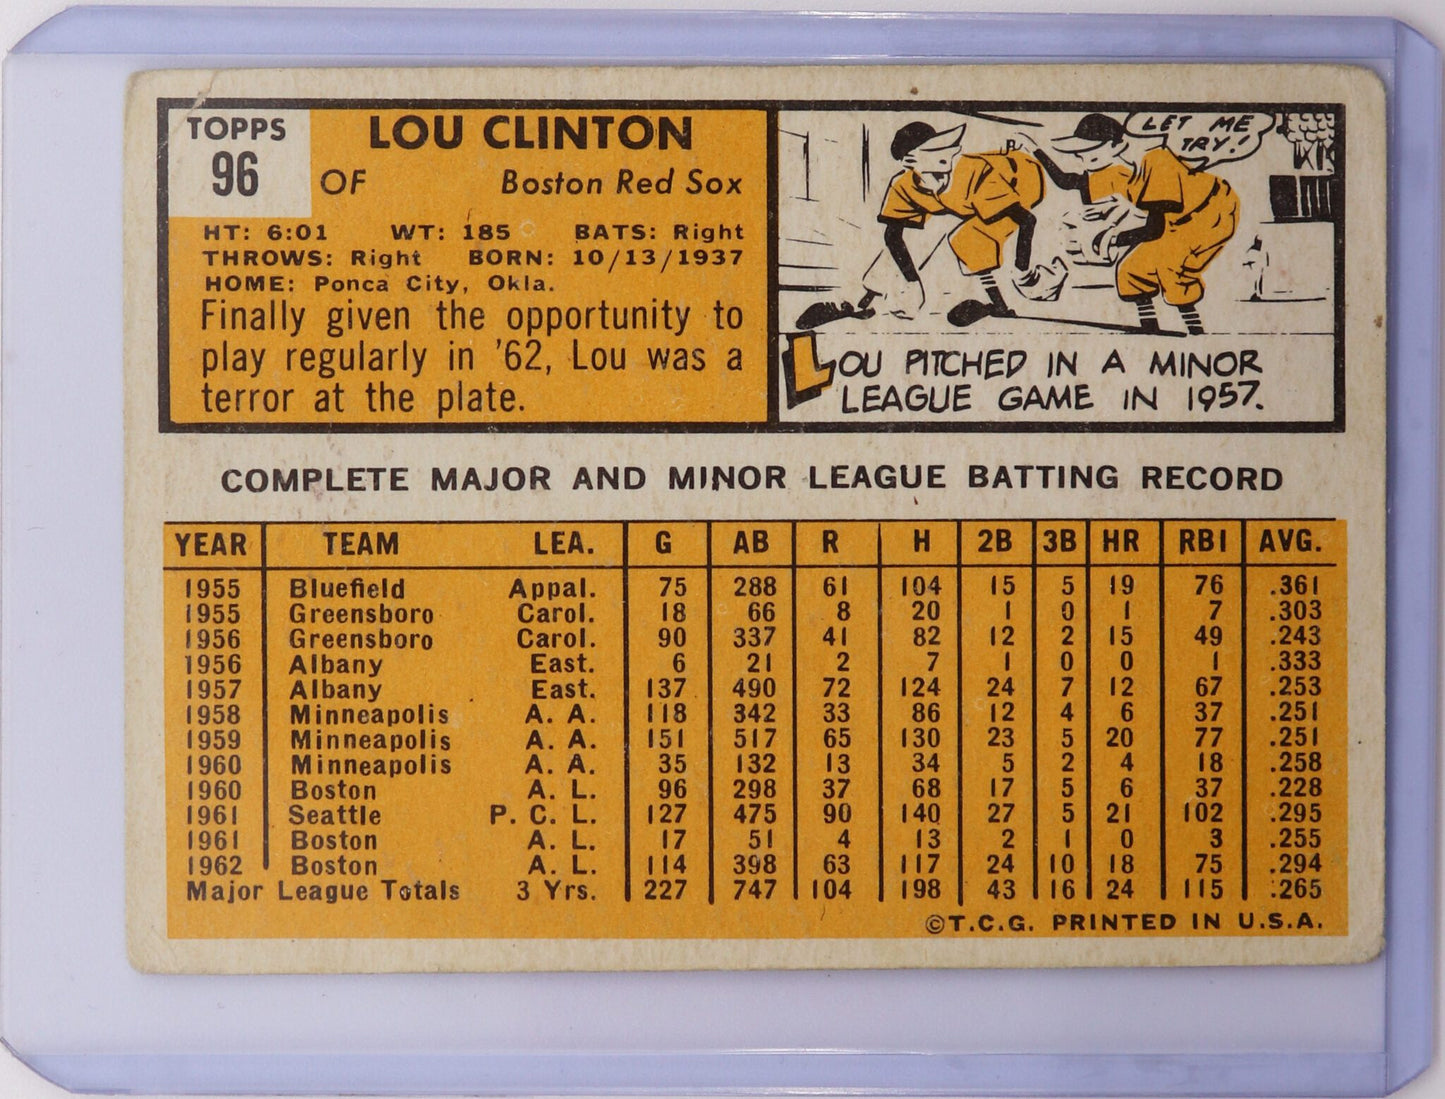 1963 Topps Lou Clinton Boston Red Sox Card #96, Fair